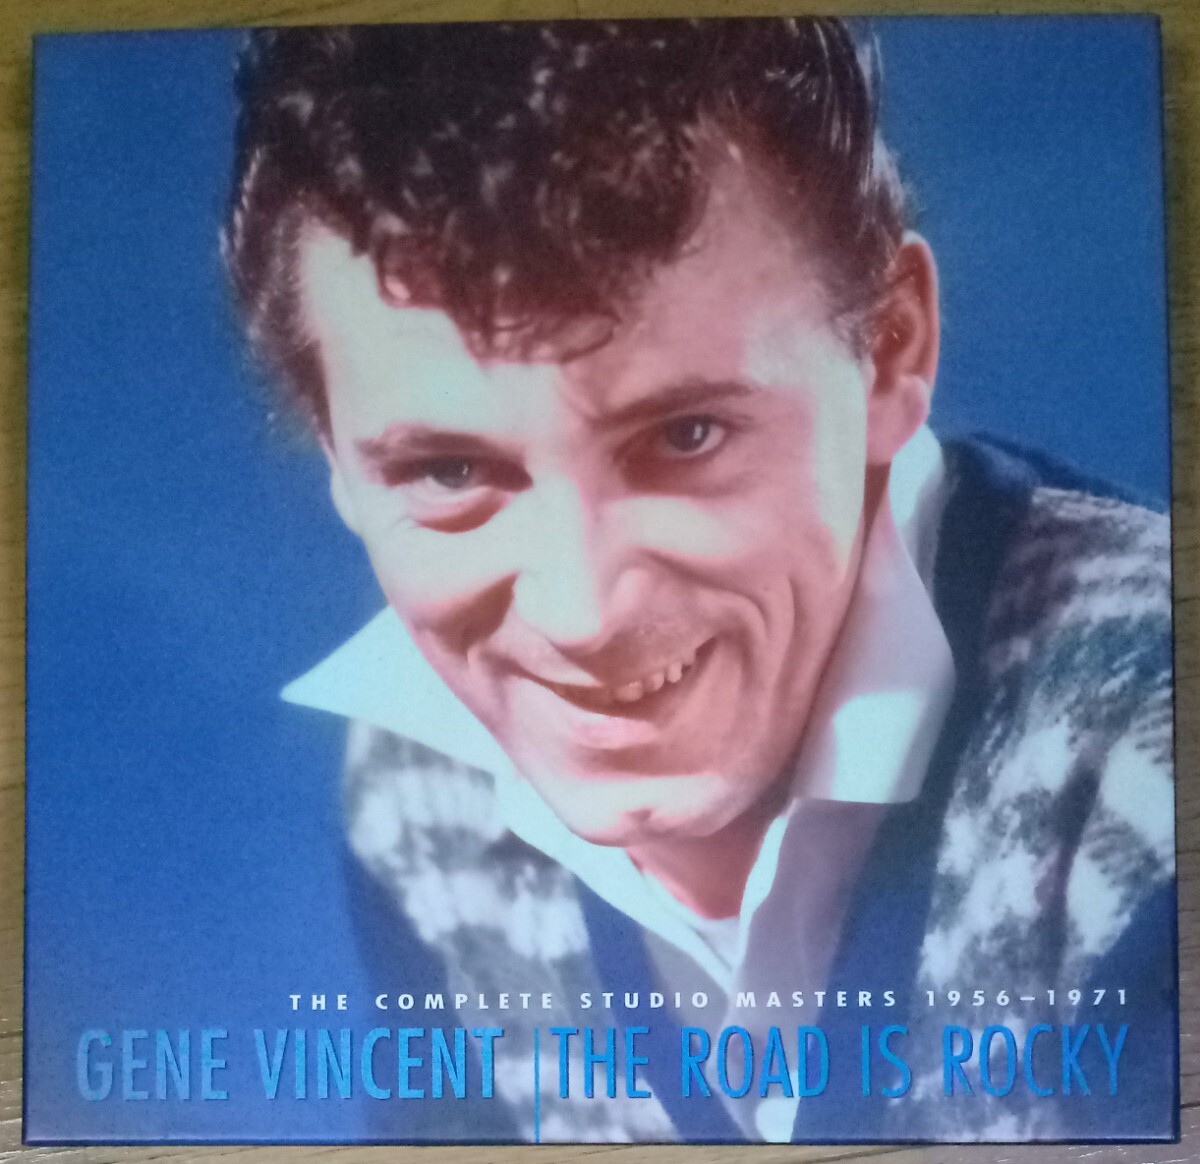 貴重盤・223曲 / GENE VINCENT - THE ROAD IS ROCKY - COMPLETE STUDIO MASTERS 1956-1971 (8CD Box) / ロカビリー / ジーン・ヴィンセント_画像1